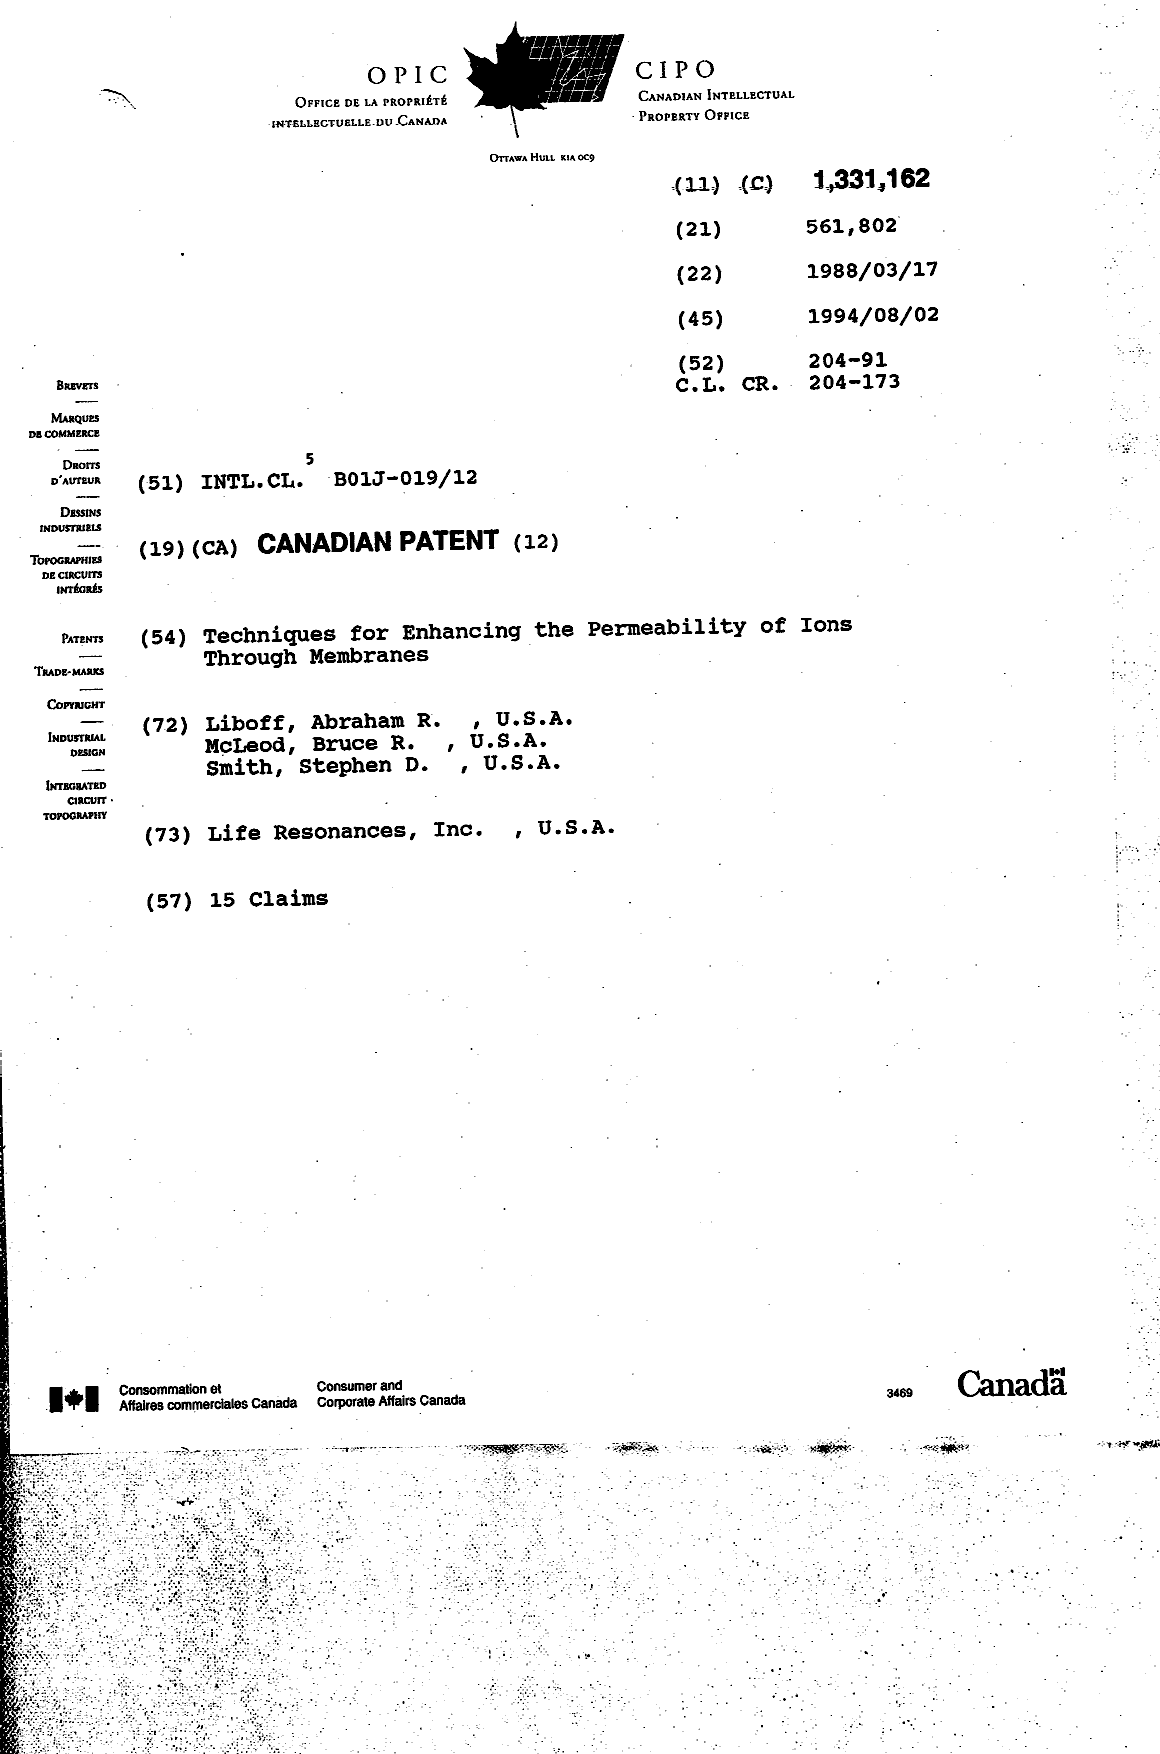 Document de brevet canadien 1331162. Page couverture 19950829. Image 1 de 1